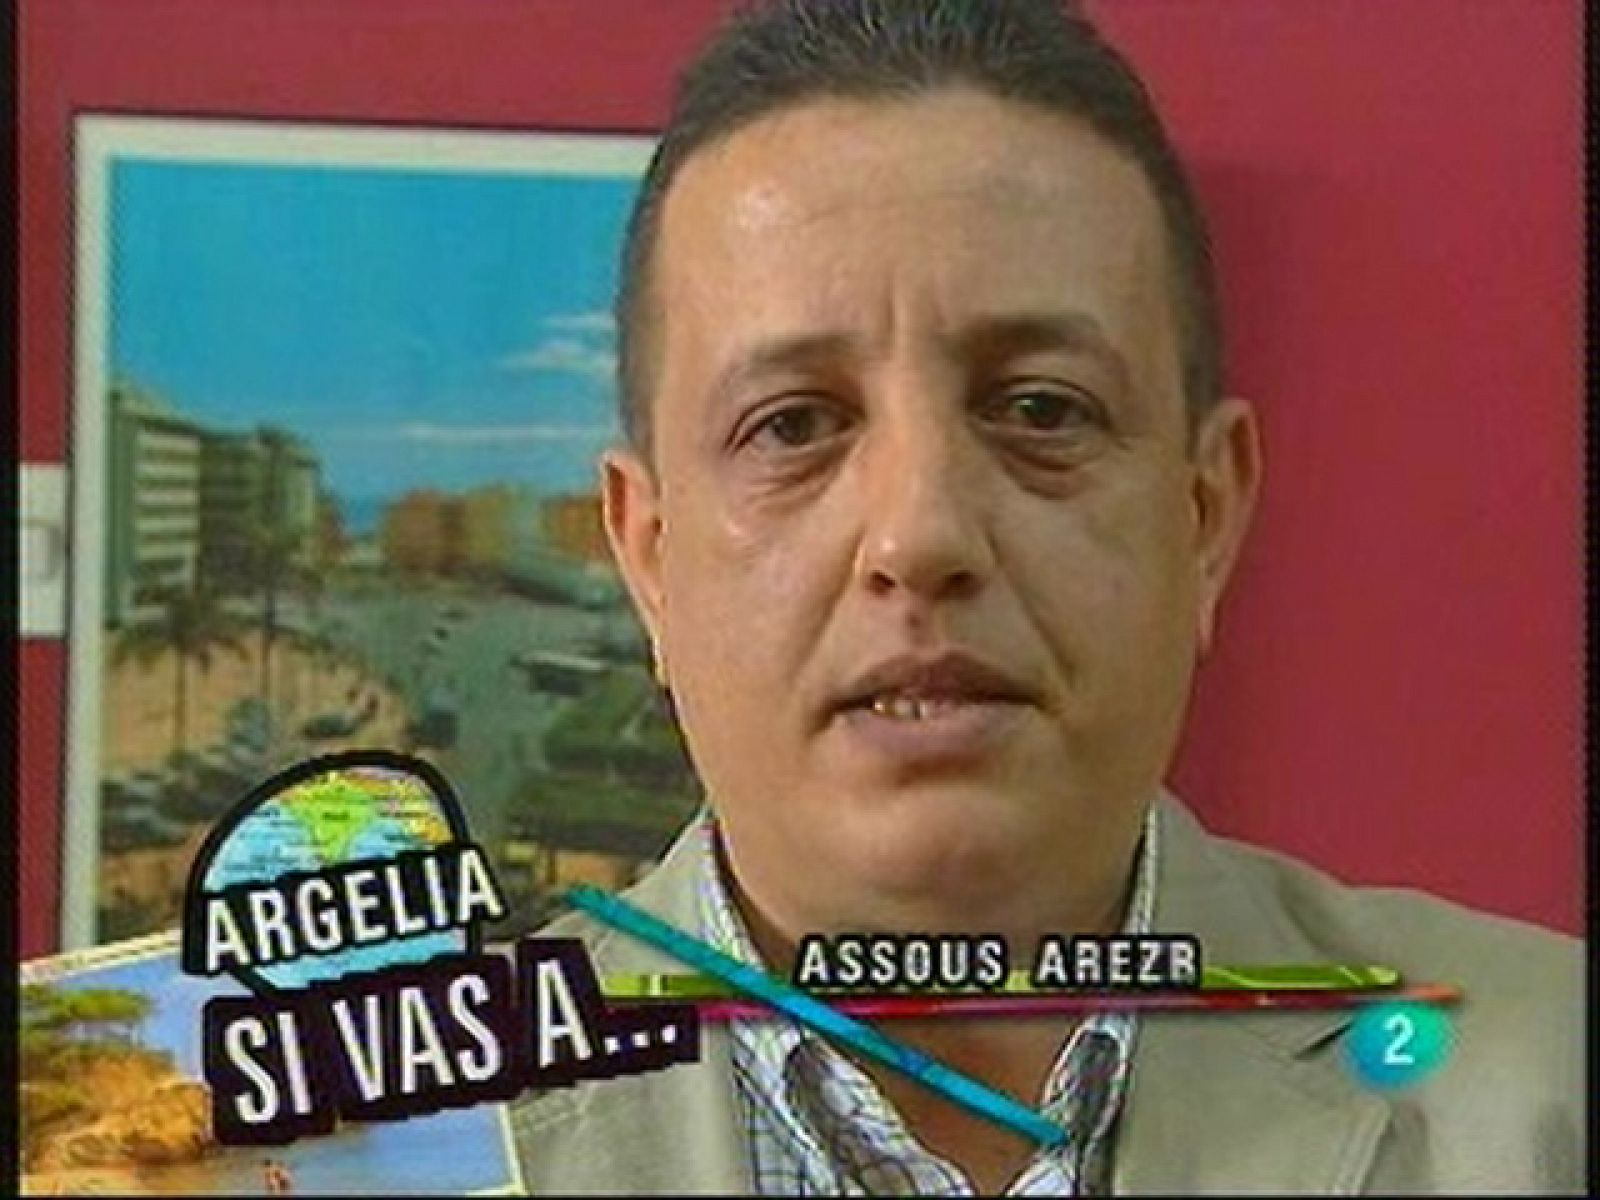 Babel en TVE - Si vas a: Argelia